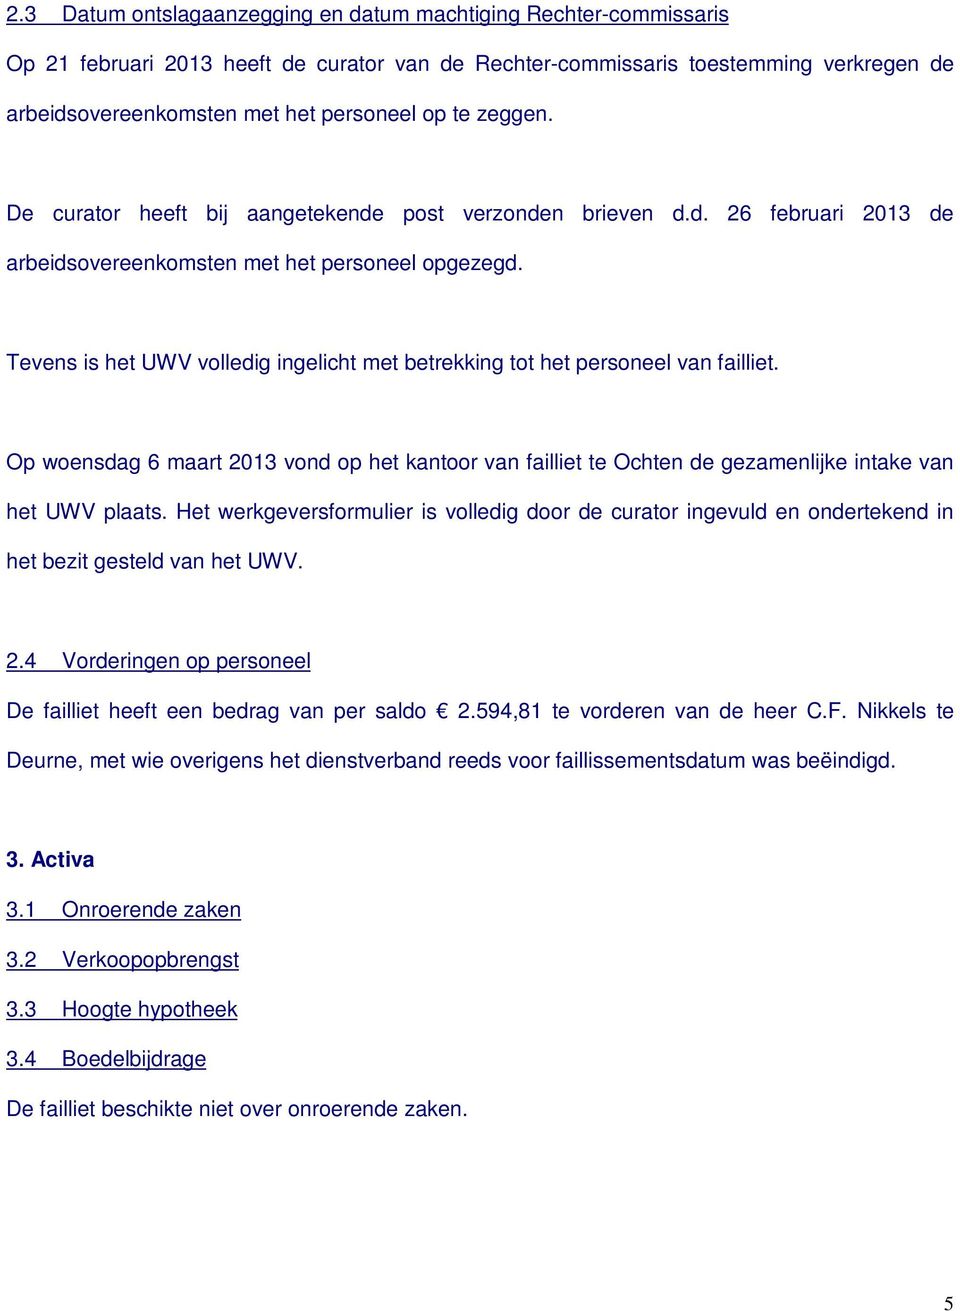 Tevens is het UWV volledig ingelicht met betrekking tot het personeel van failliet. Op woensdag 6 maart 2013 vond op het kantoor van failliet te Ochten de gezamenlijke intake van het UWV plaats.